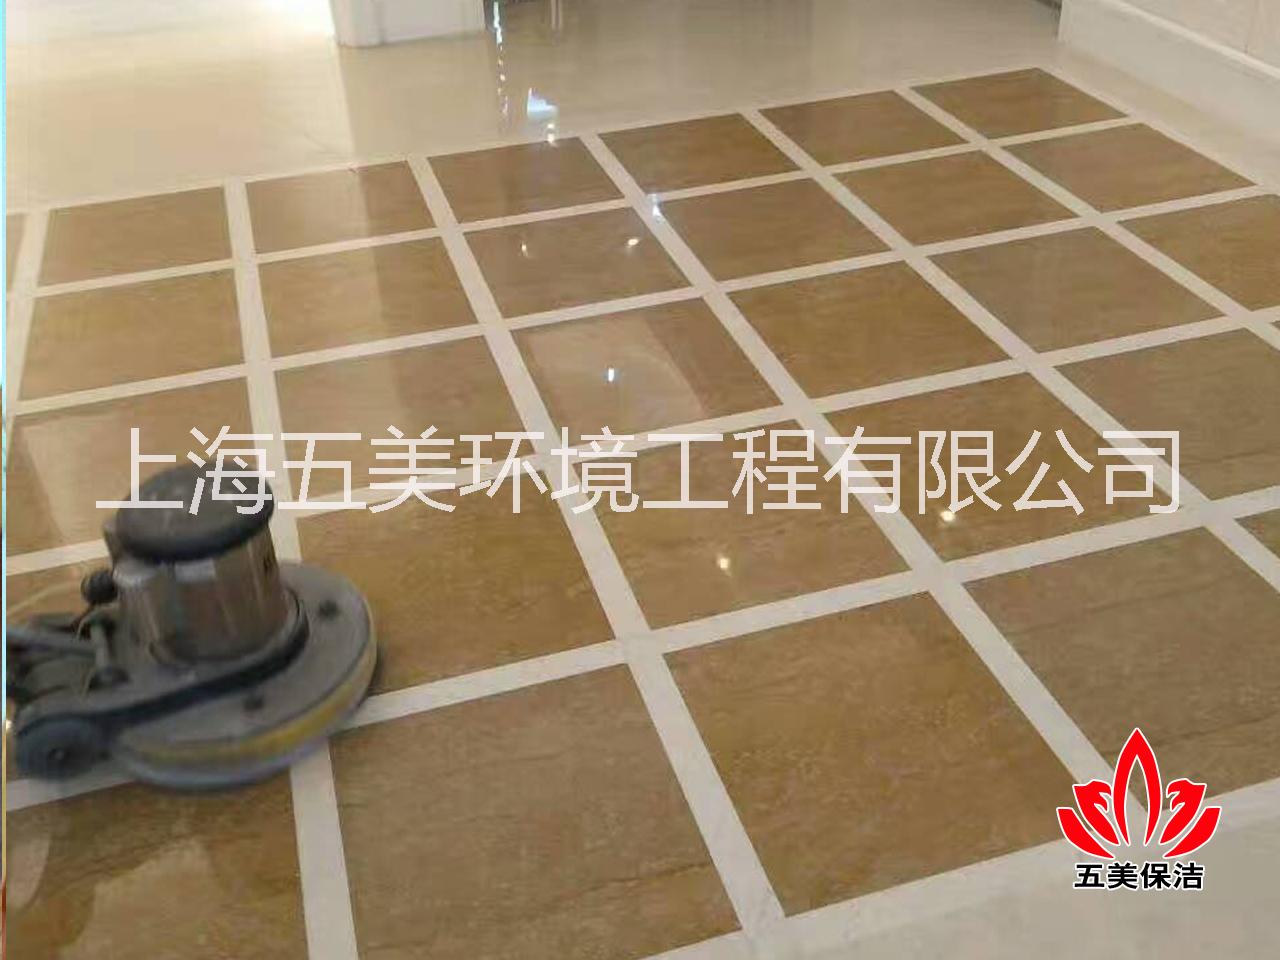 上海大理石翻新公司,上海石材翻新，上海徐汇地面清洗公司图片